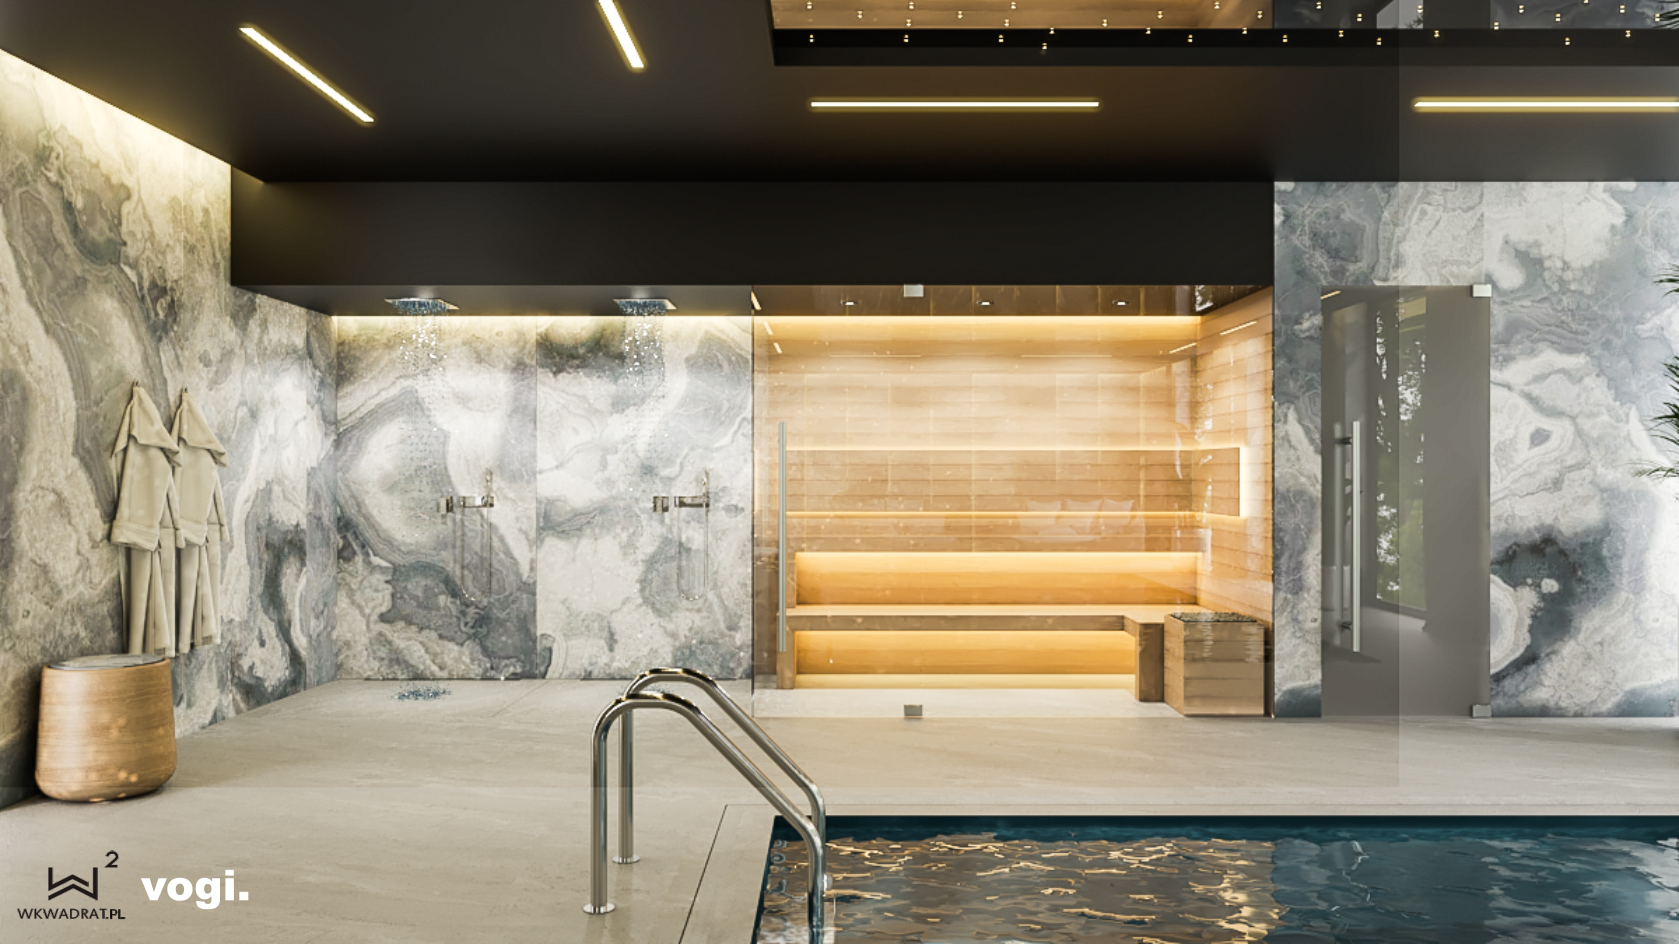 Projekt luksusowej łazienki SPA wykonany przez Pracownię Projektowania Wnętrz Wkwadrat, gdzie możemy zobaczyć prysznic bez brodzika, saunę, basen oraz stręfę relaksu z lerzakami. W prysznicu znajdziecie dwa odpływy przyściene DUO wraz ze stalową listwą spadkową Vogi. 